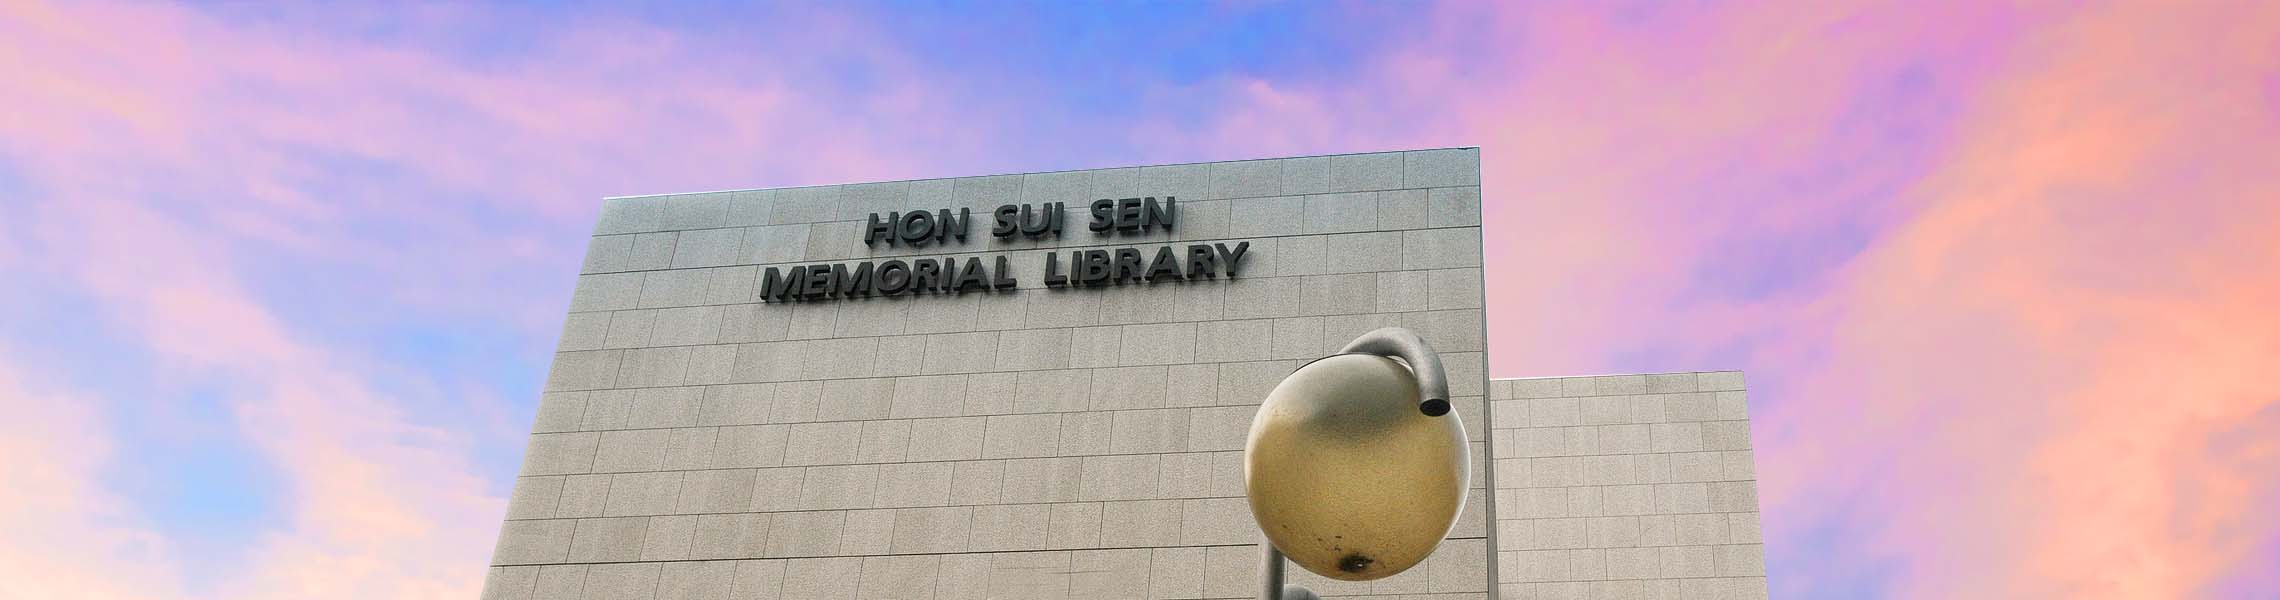 Hon Sui Sen Memorial Library Image